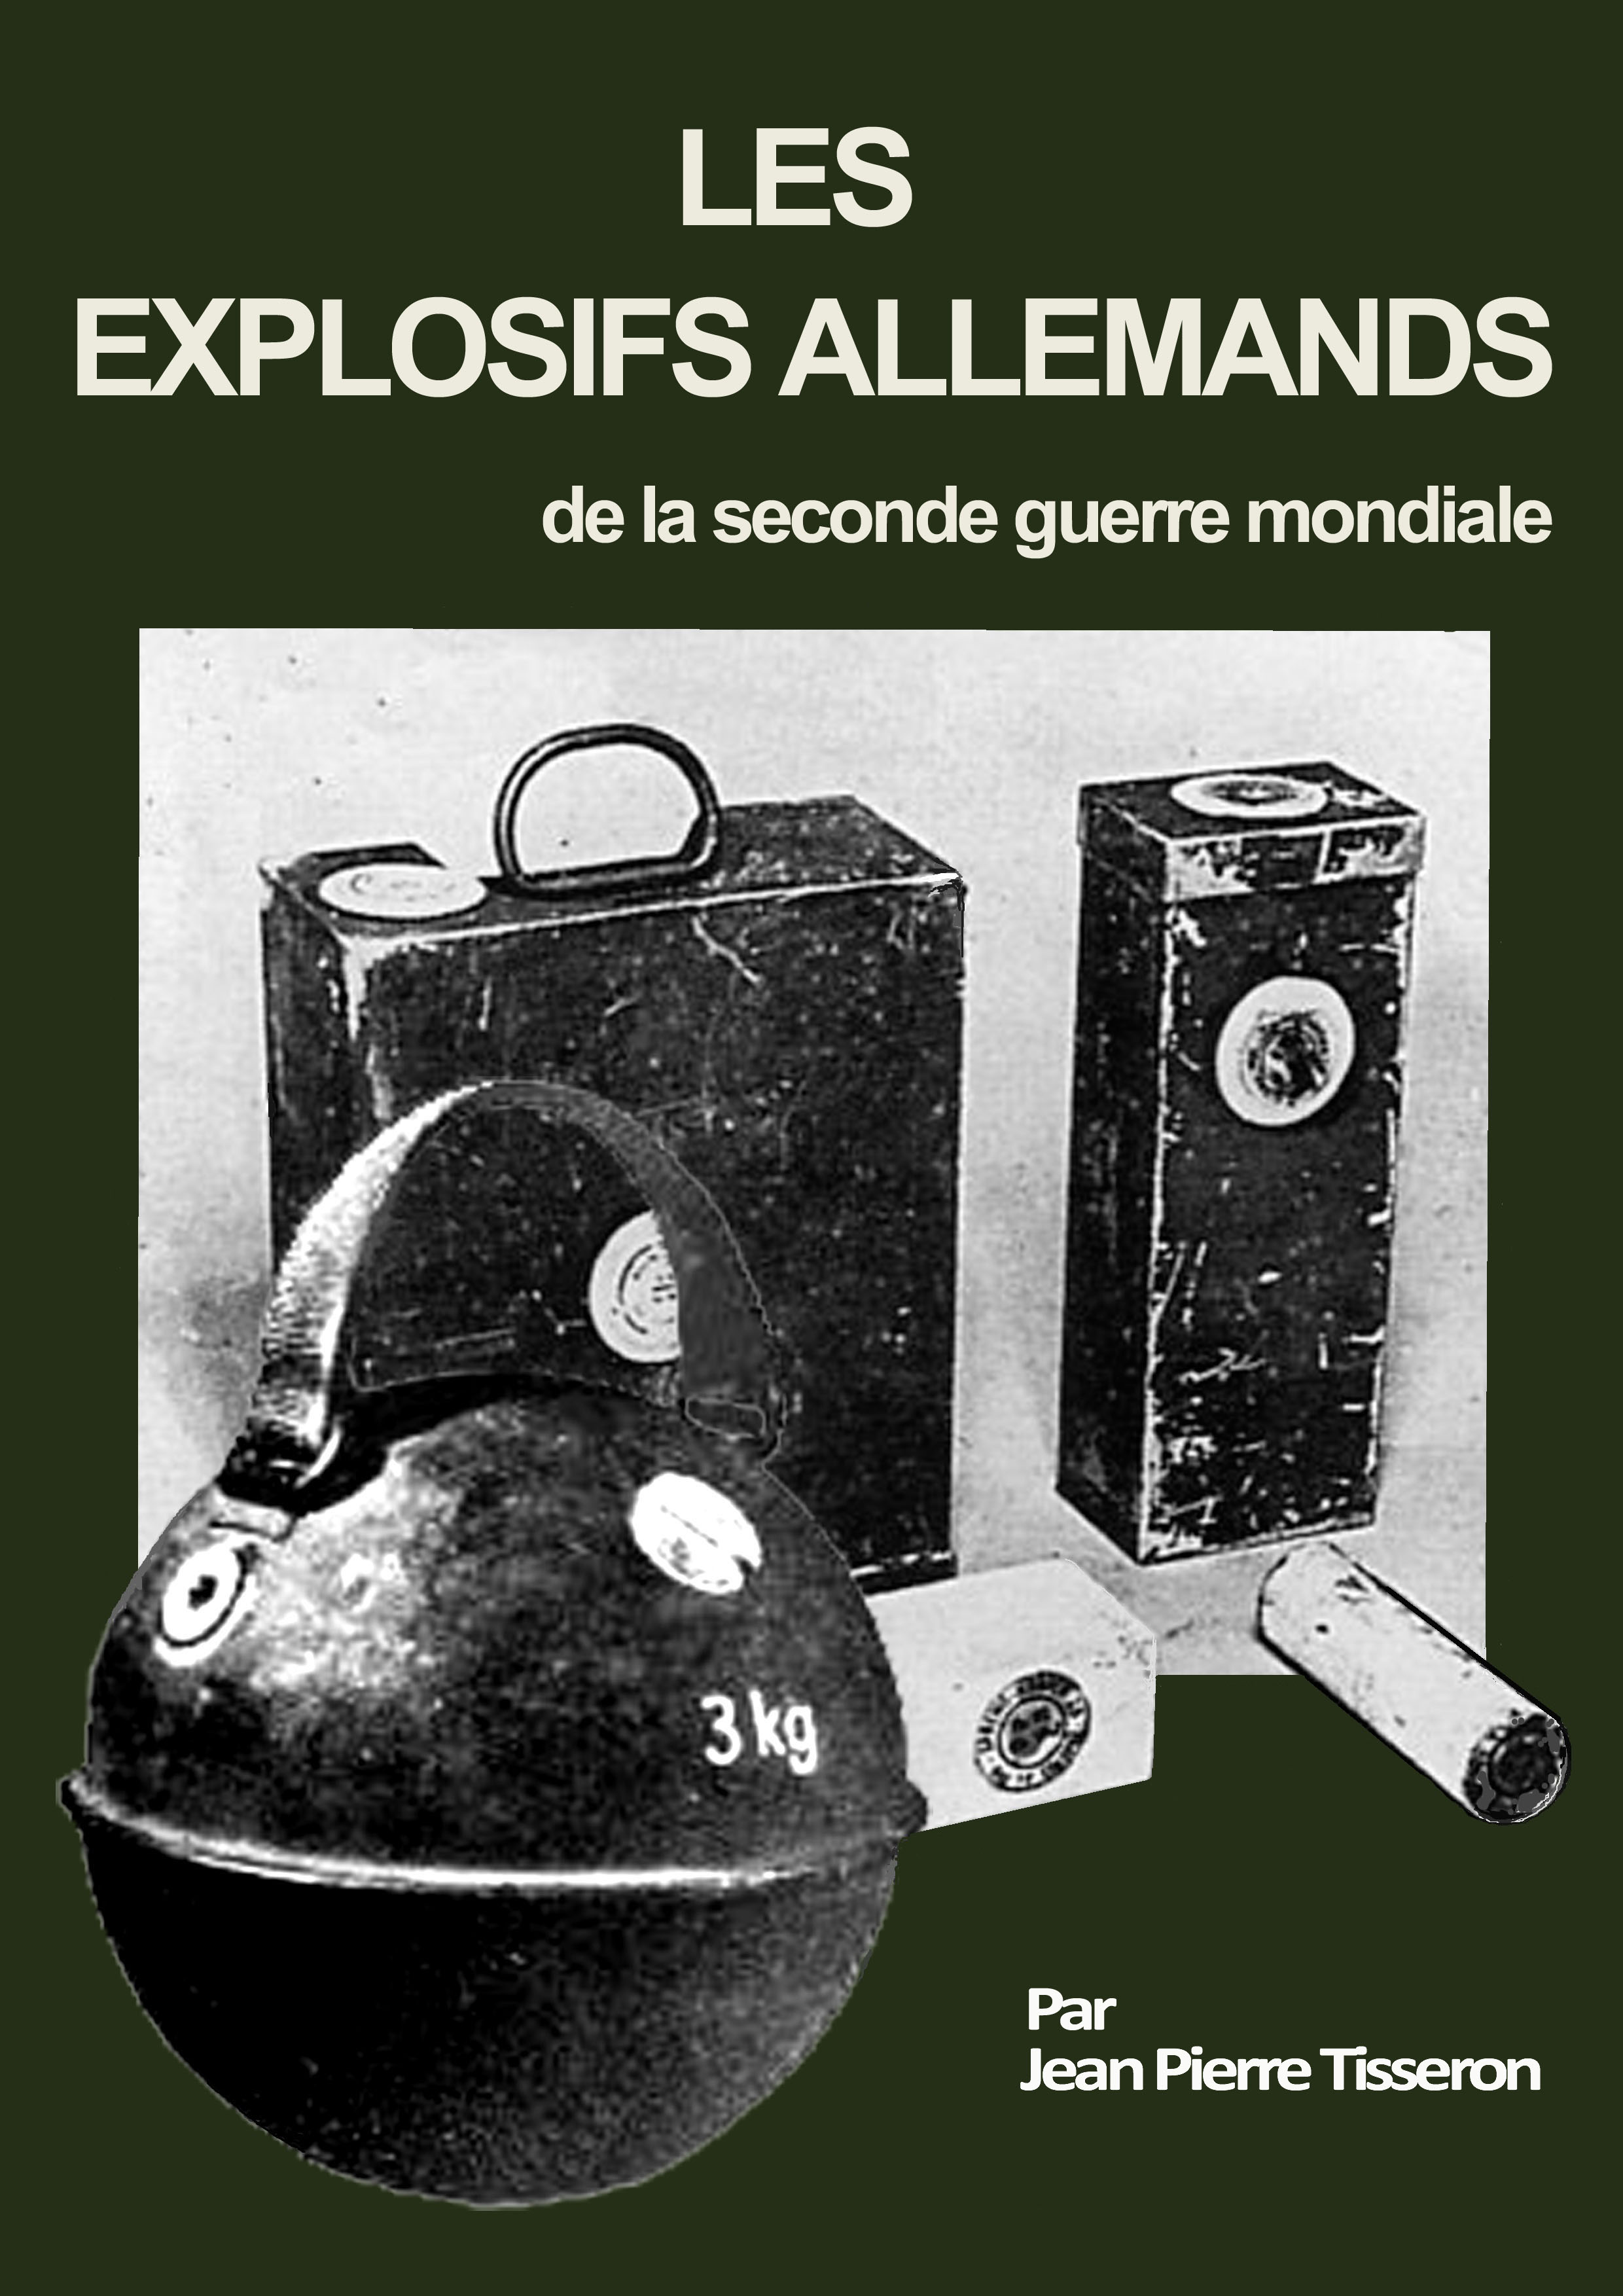 Les explosifs allemands de la seconde guerre mondiale